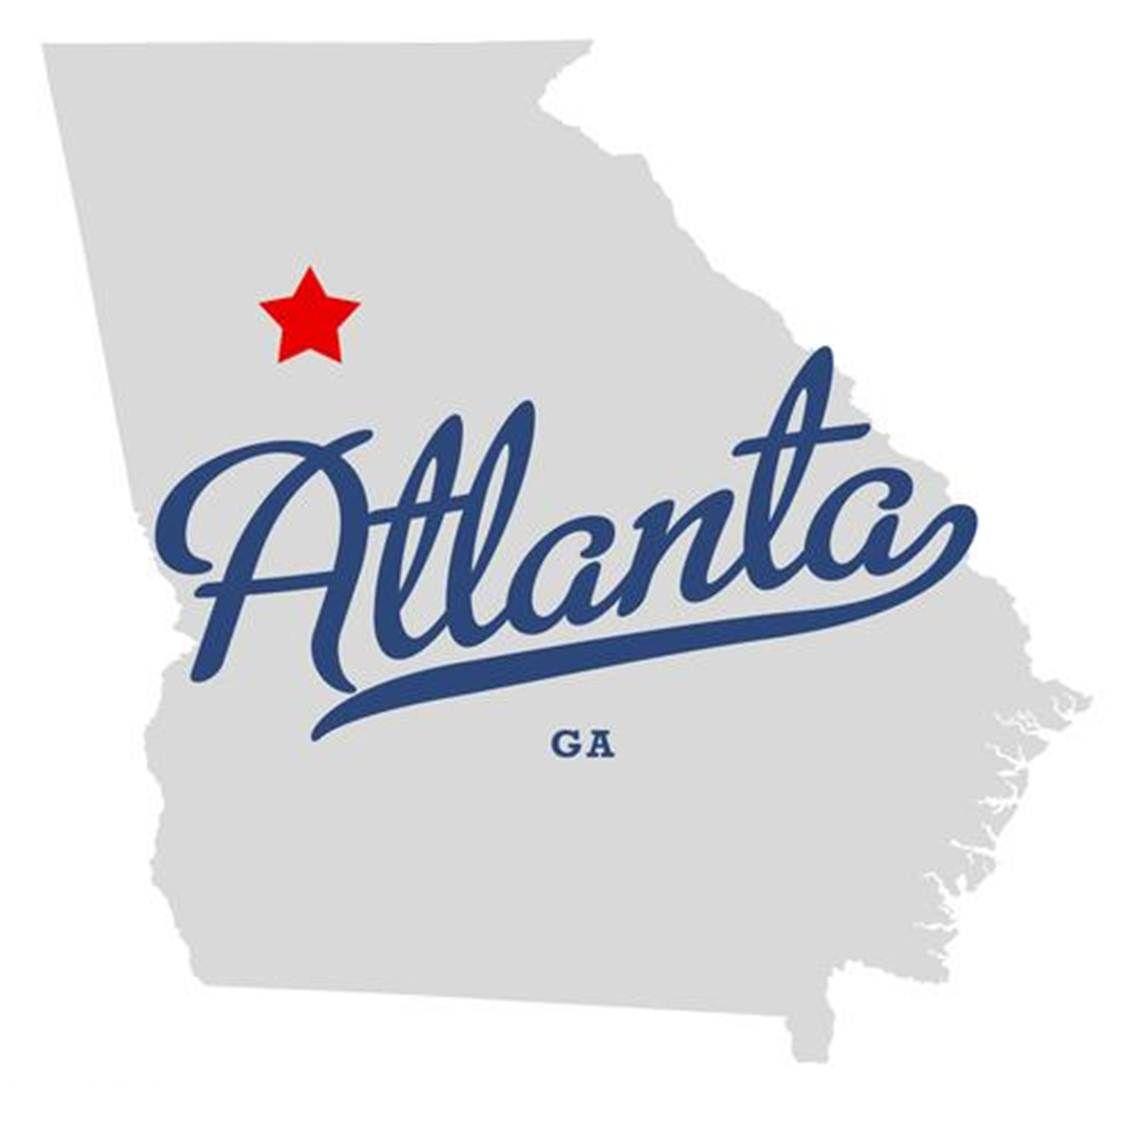 USA Georgia Logo - COCOA 2018, Atlanta, Georgia